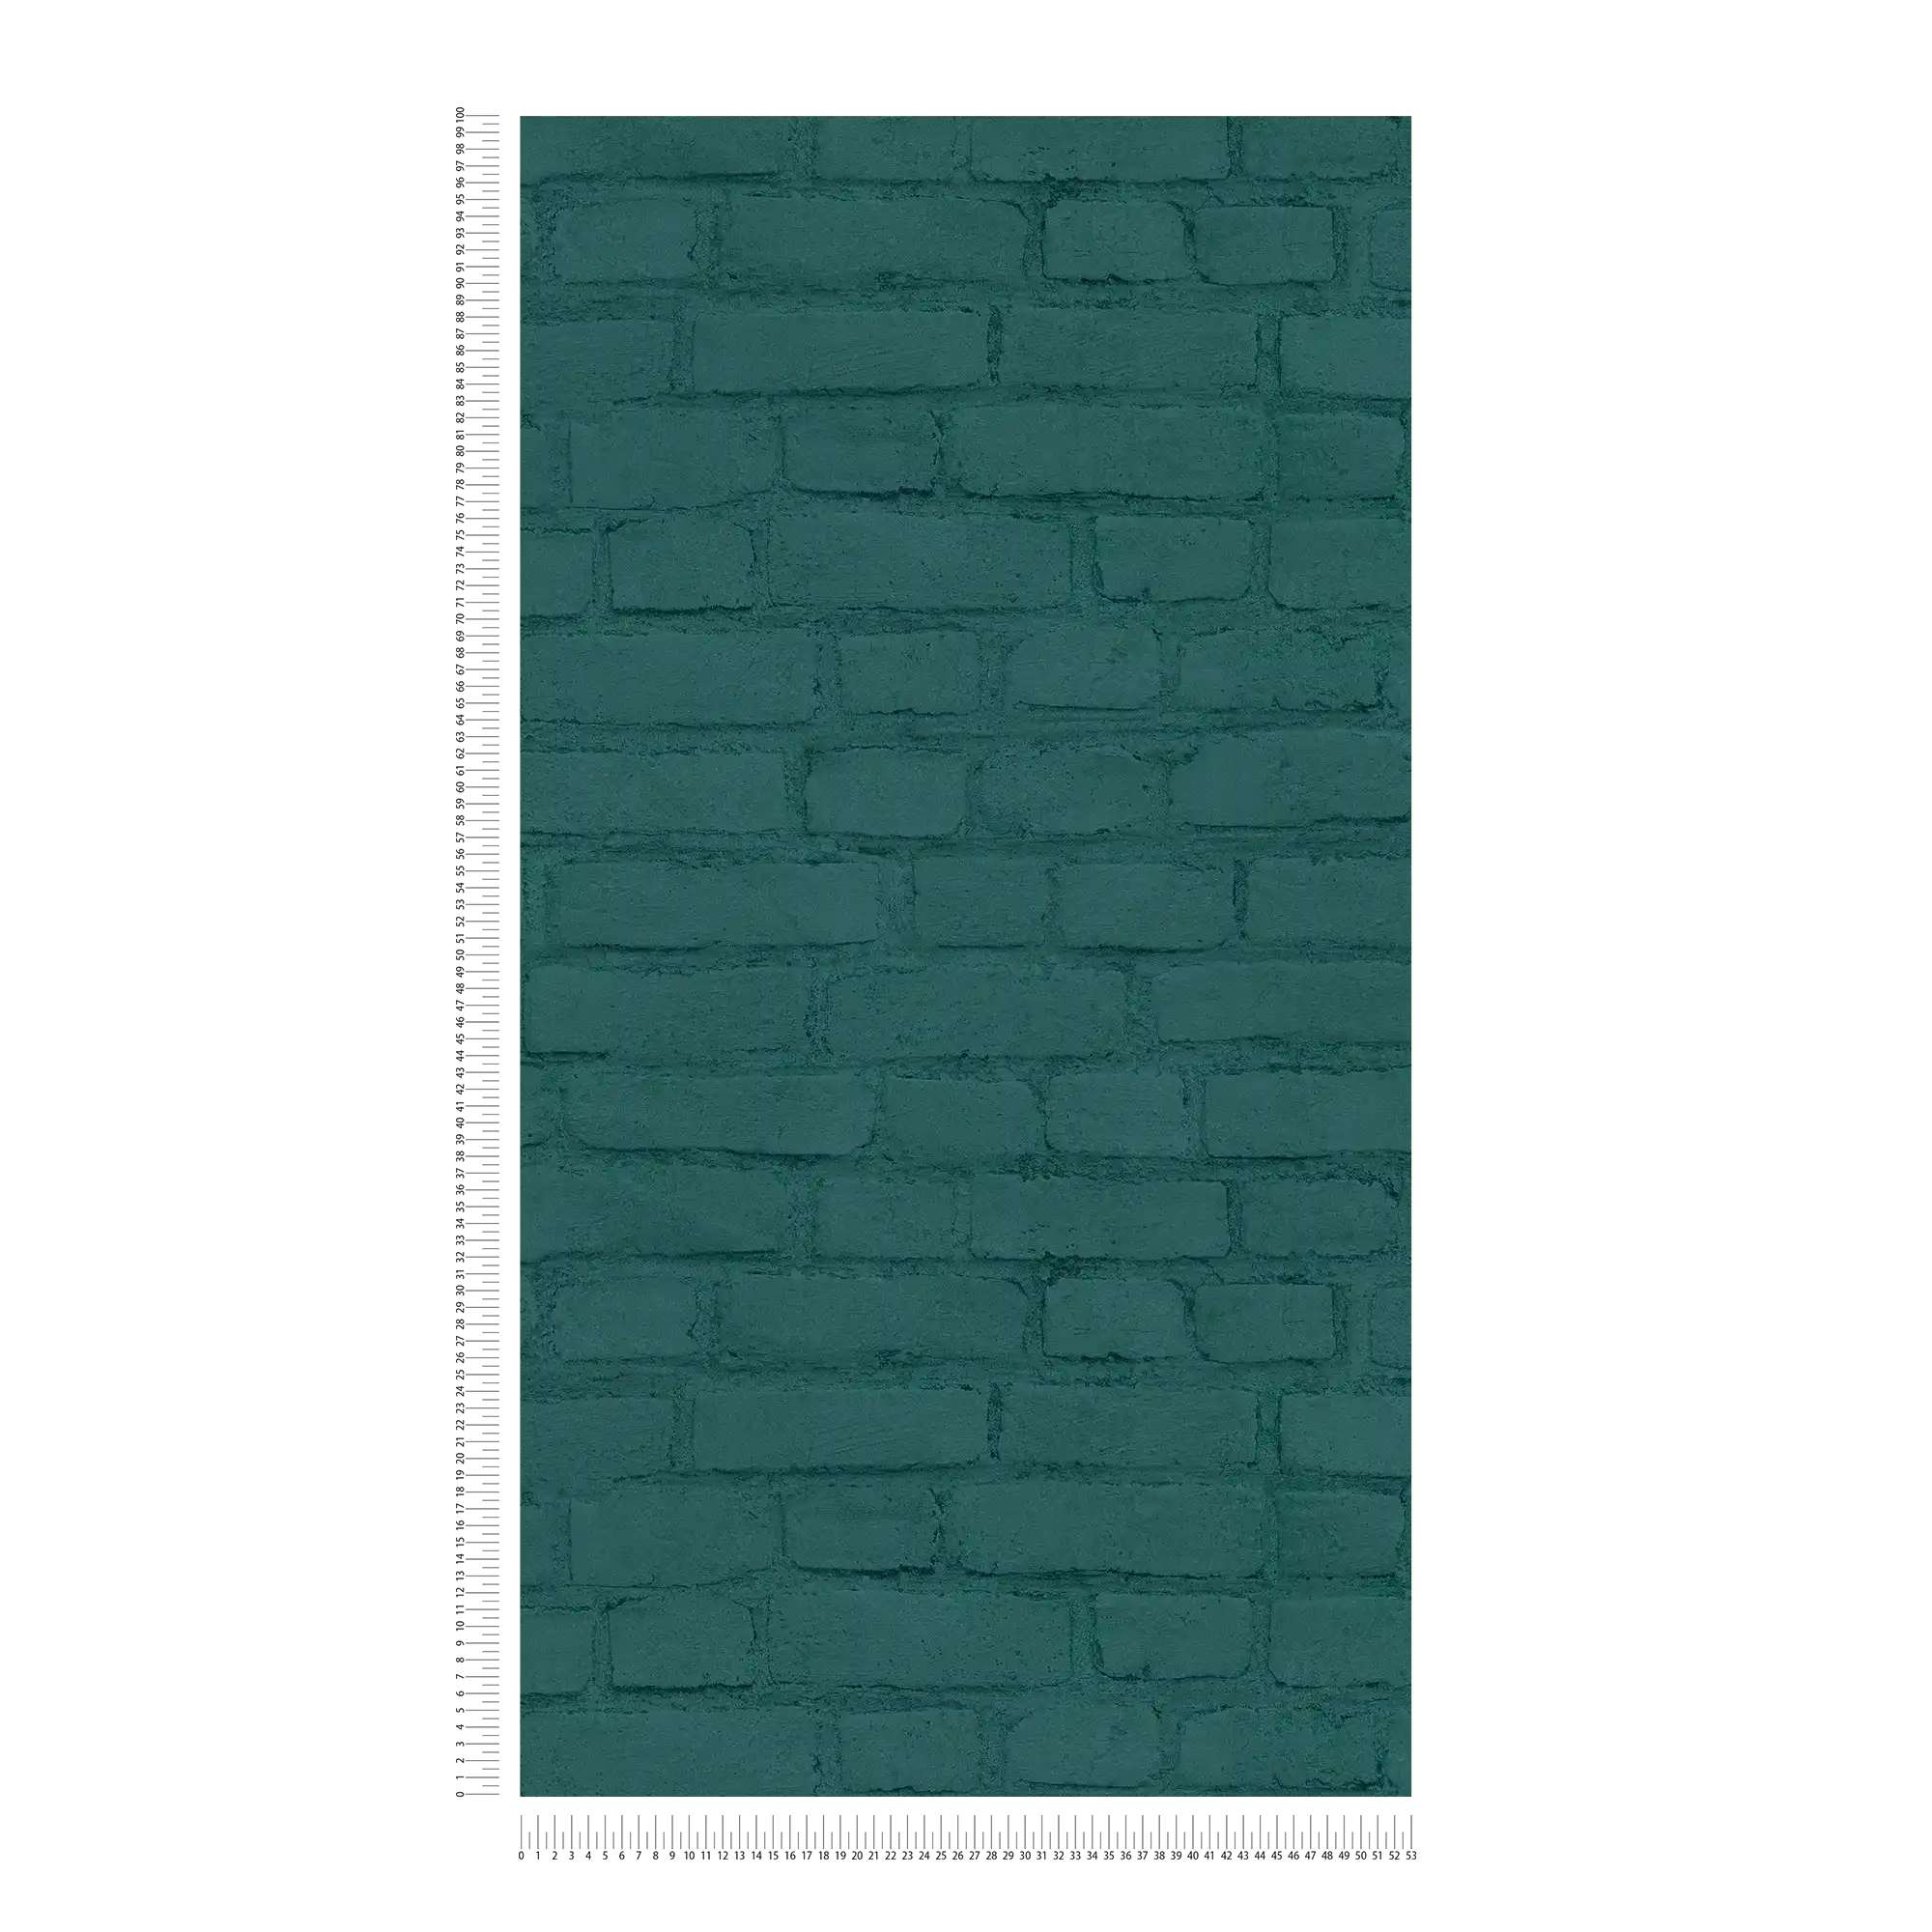             Papier peint mur en pierres aspect clinker - Vert
        